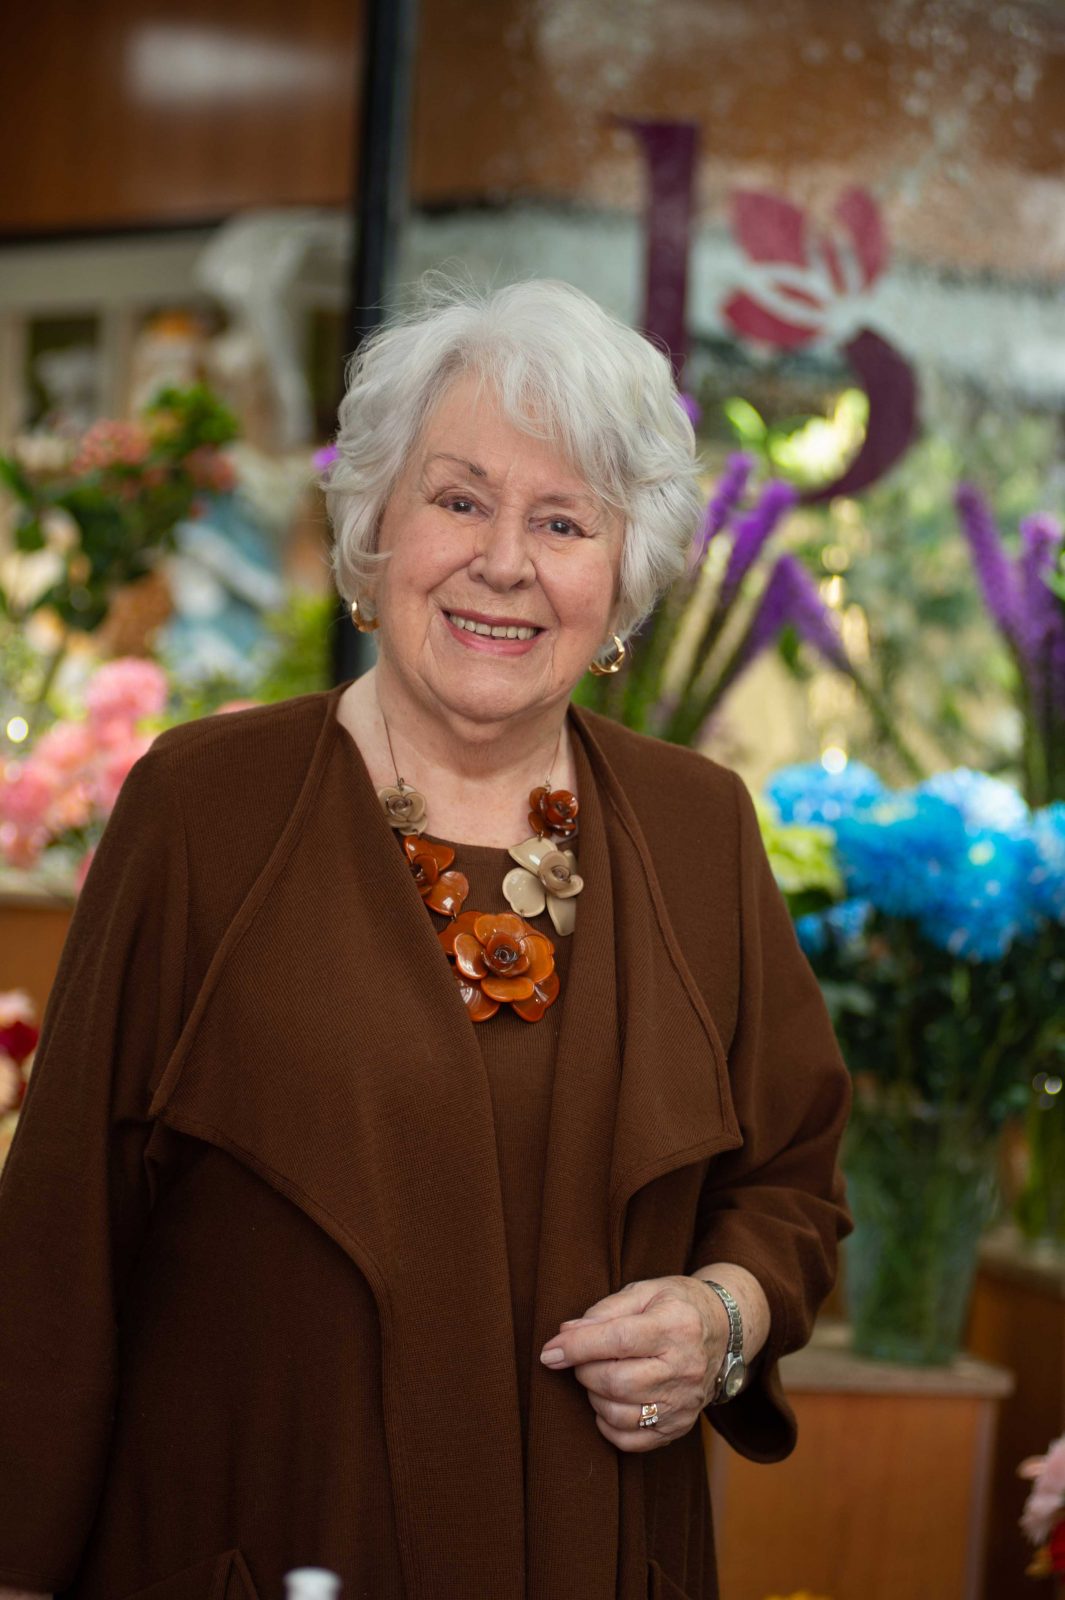 Fleuriste Bergeron fête ses 50 ans. Sa fondatrice Sylvie Bergeron demeure toujours passionnée par les fleurs